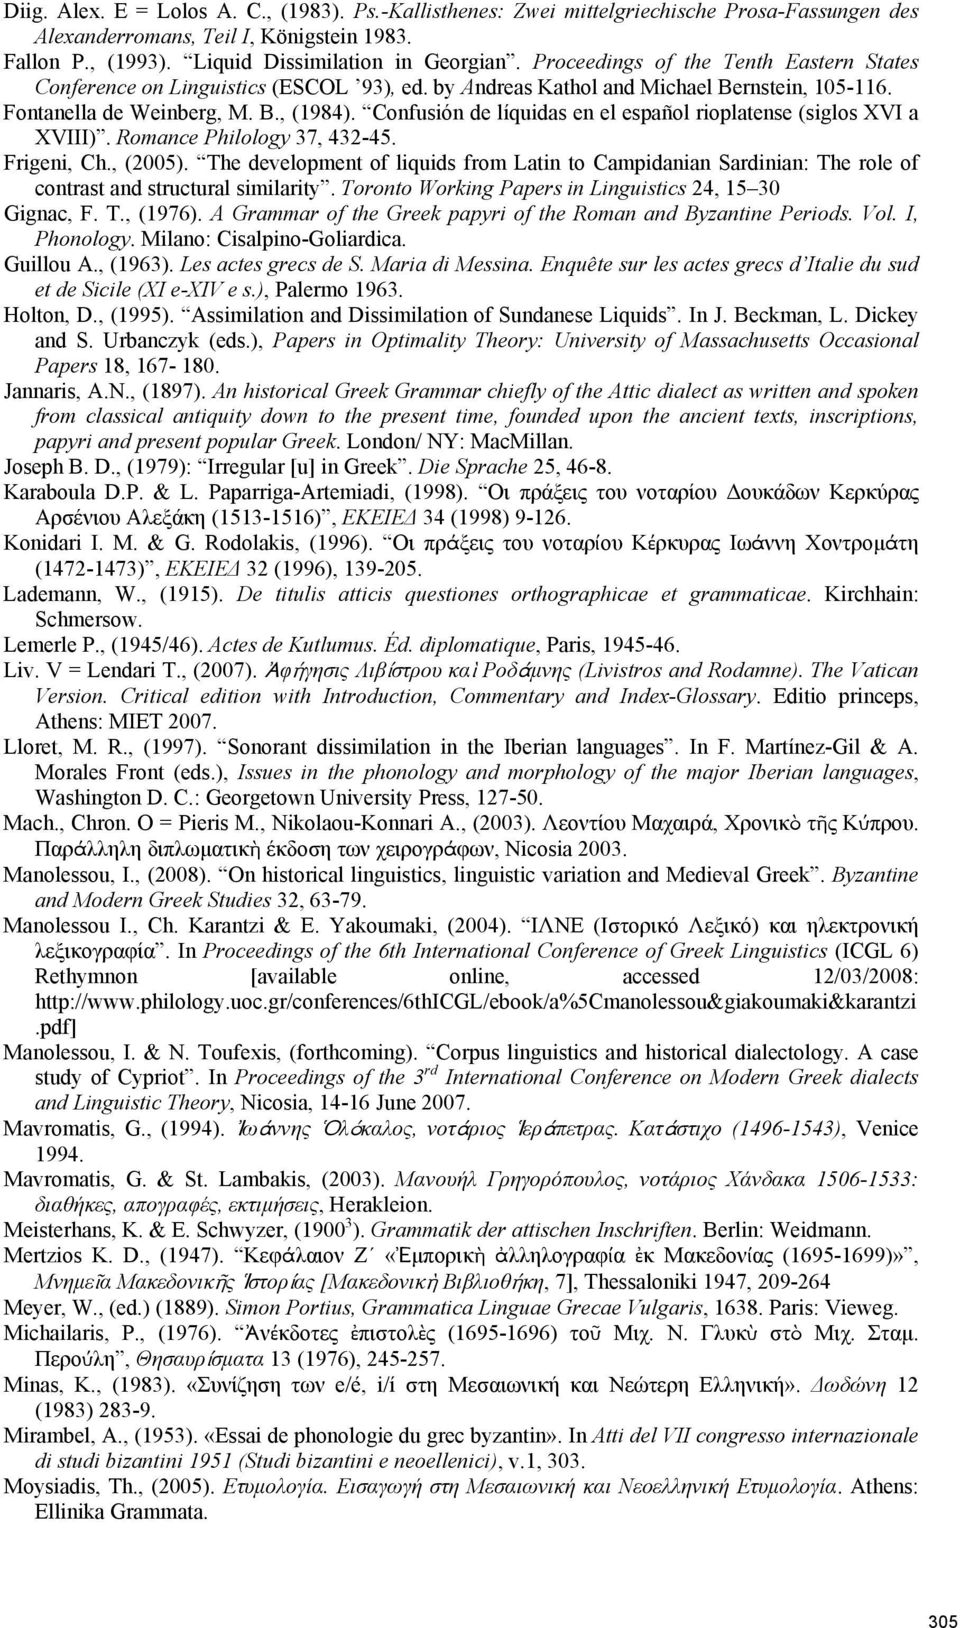 Confusión de líquidas en el español rioplatense (siglos XVI a XVIII). Romance Philology 37, 432-45. Frigeni, Ch., (2005).